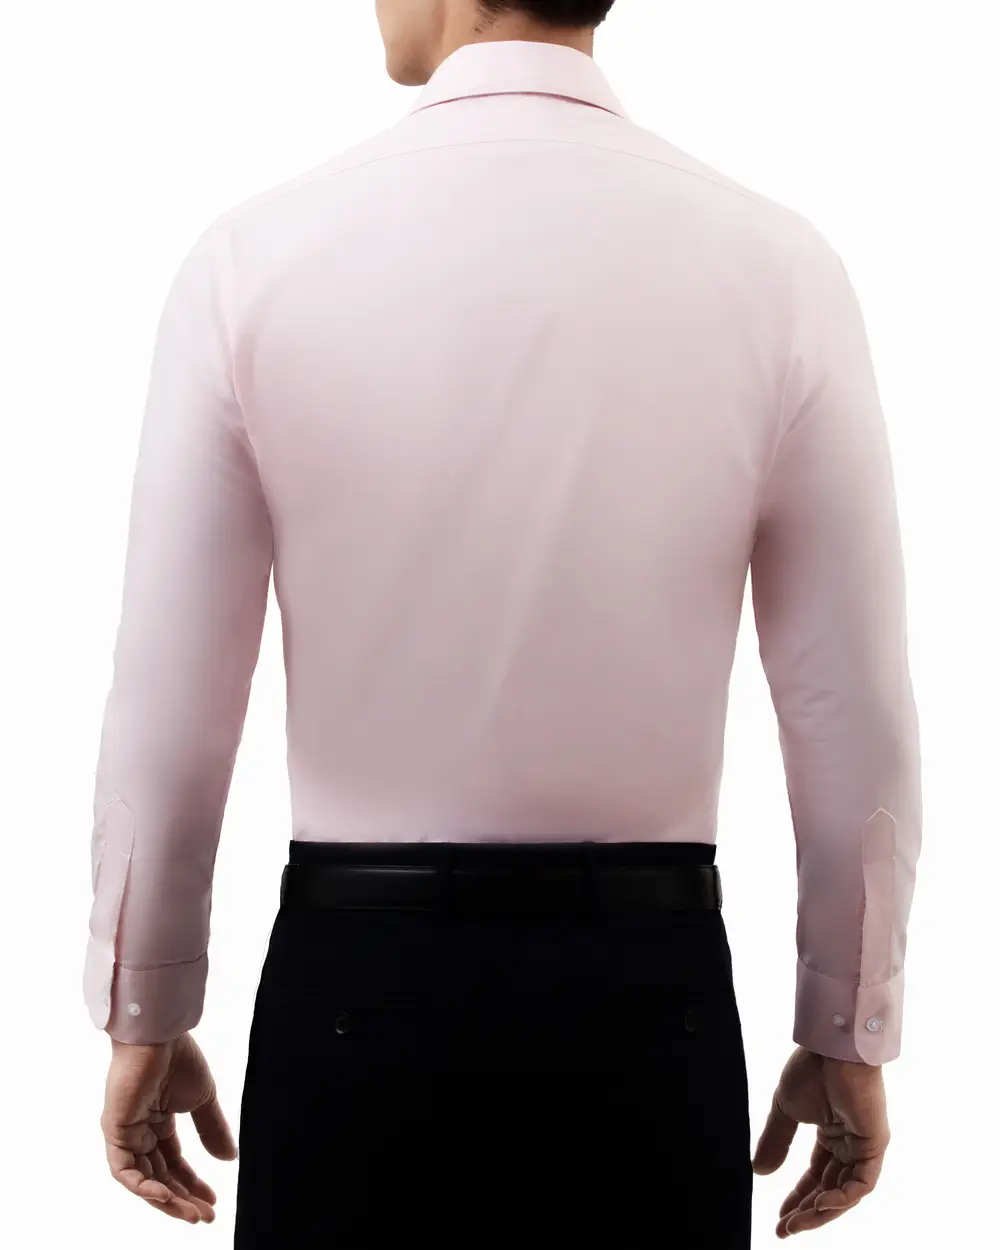 Camisa clásica slim fit manga larga color rosa pastel
